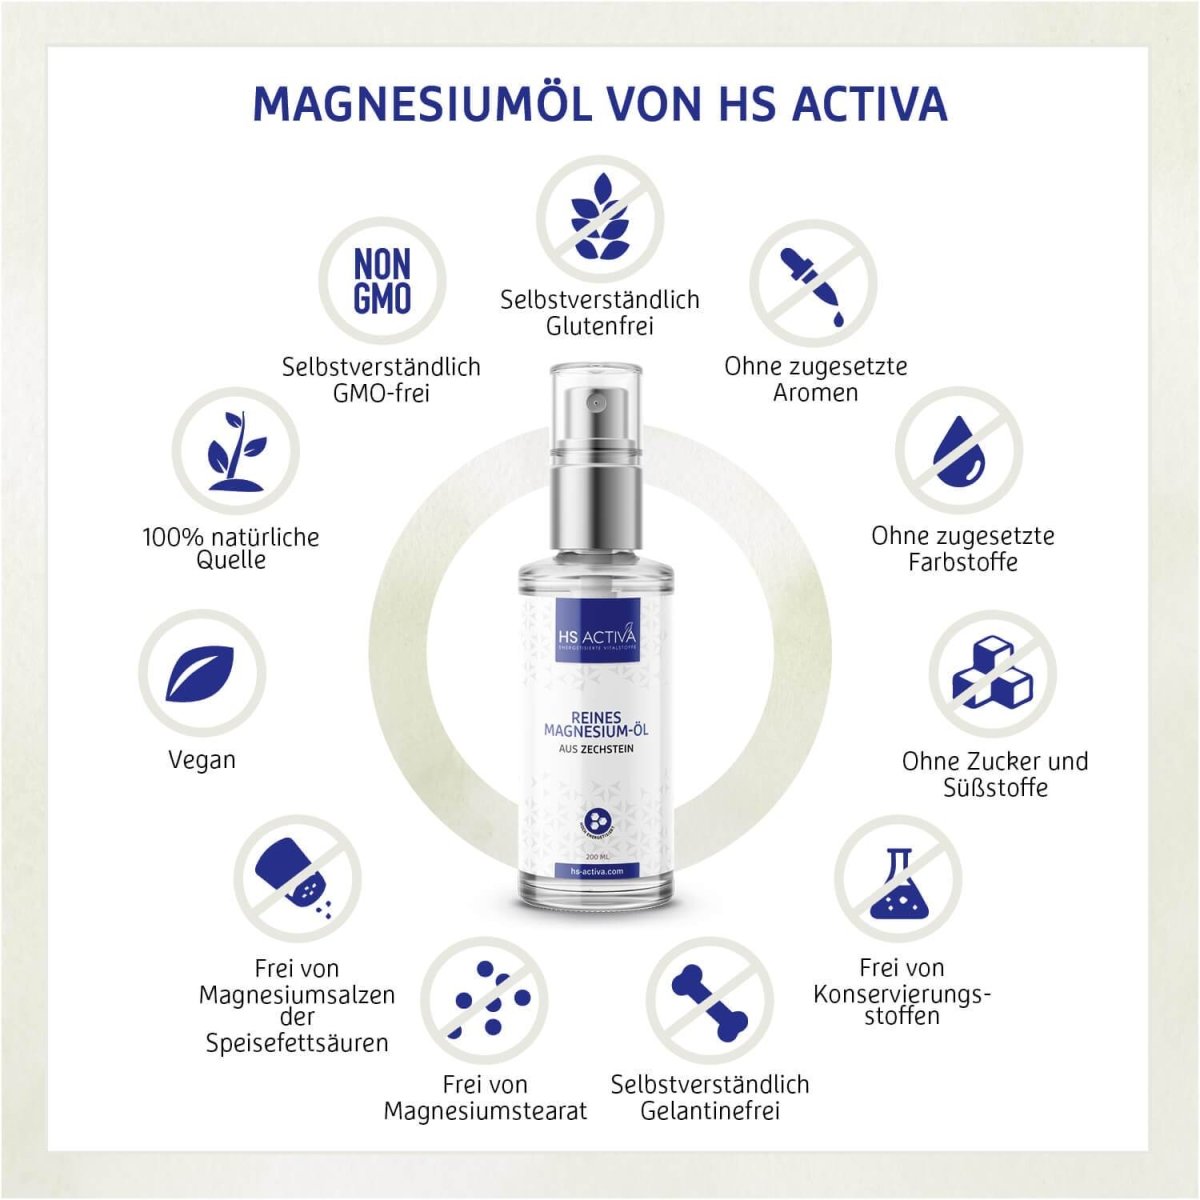 Magnesium-Öl auf Urwasser - HS Activa